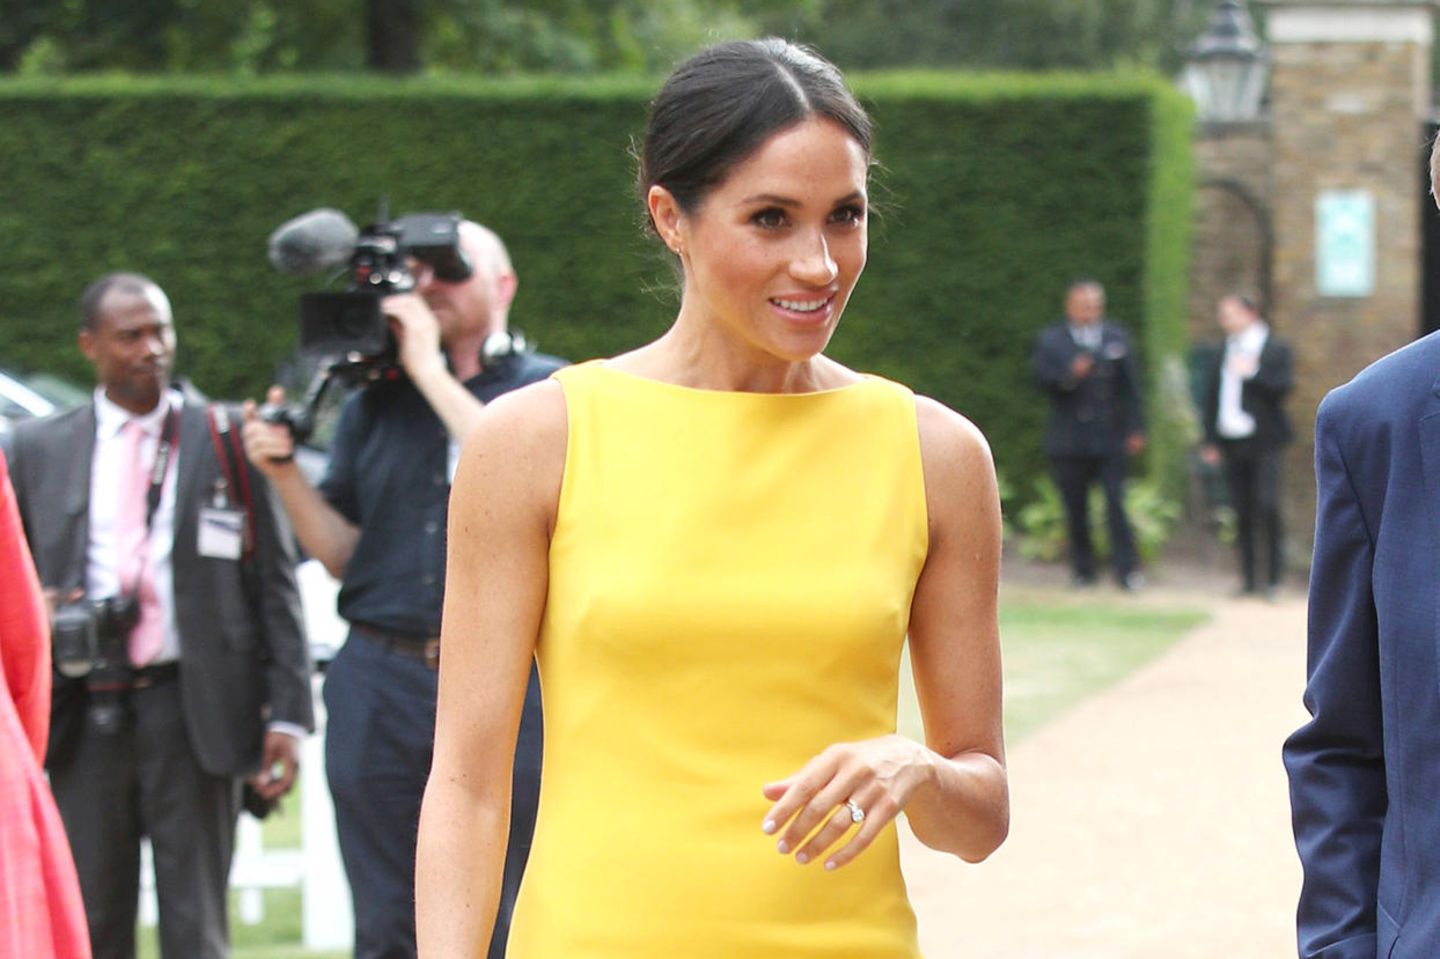 Wow, was für ein strahlender Auftritt. Anfang Juli 2018 entscheidet sich Meghan Markle erstmals für ein leuchtend gelbes Kleid, als sie zum Empfang "Your Commonwealth" in London erscheint.